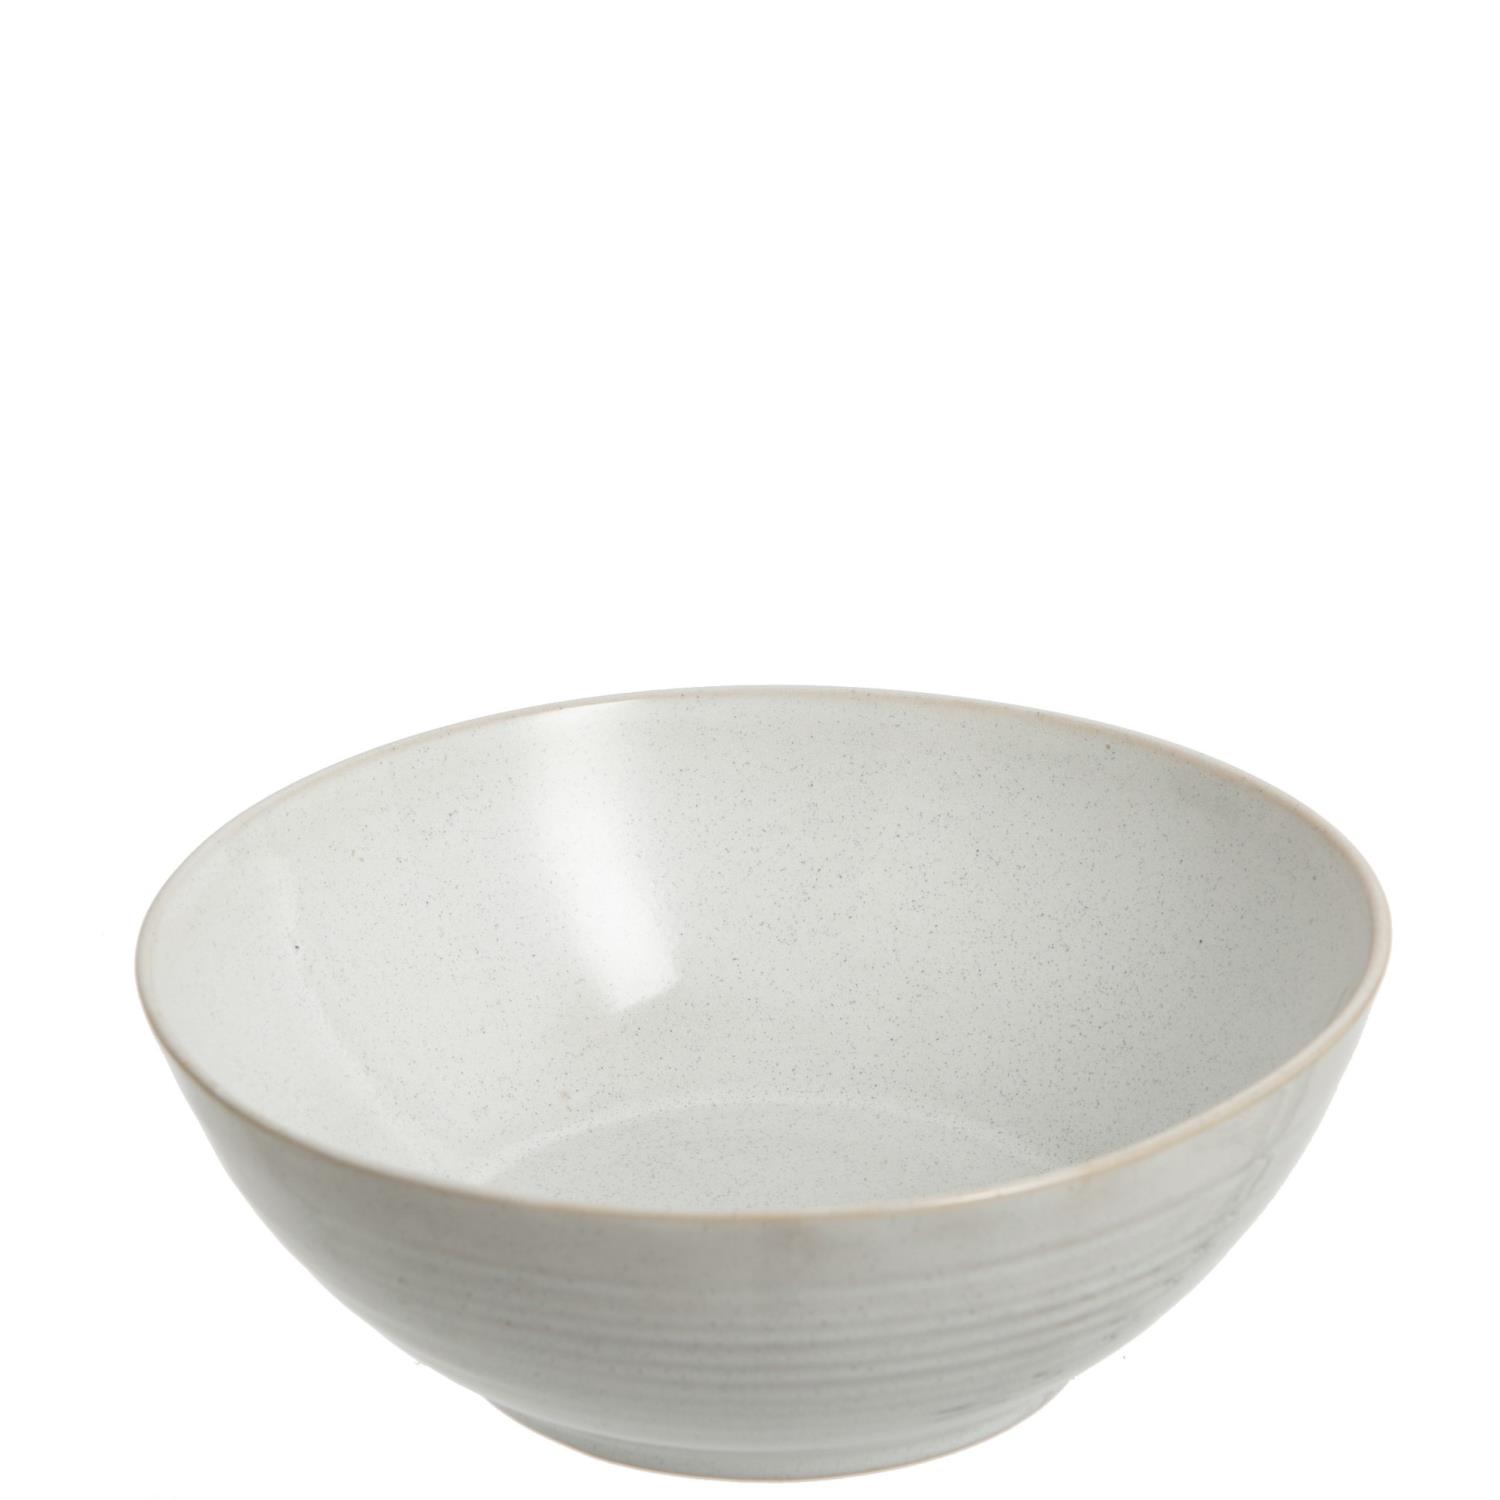 Bowl Noa Porchelain White 19x19xh7,5cm 98316